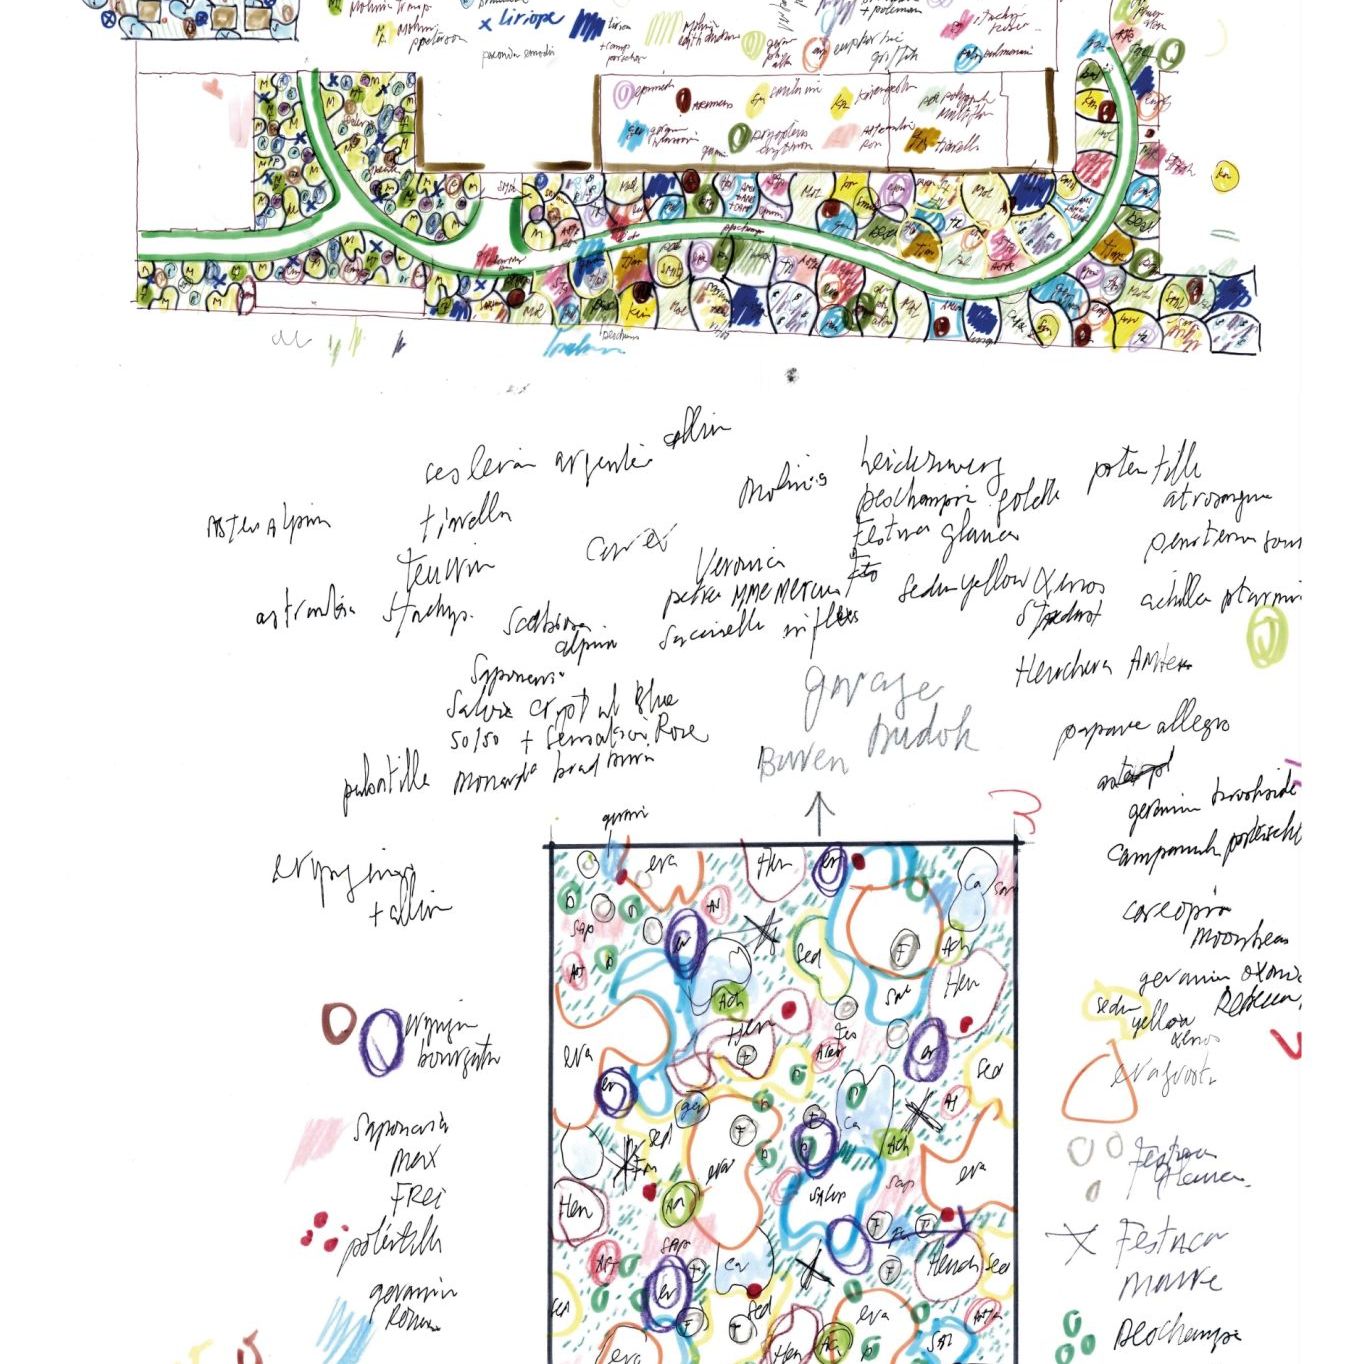  Der Waldgarten. Piet Oudolfs Skizzen für die Landschaftsgestaltung mit Detail des Garagendachs und einem Pflanzschlüssel 